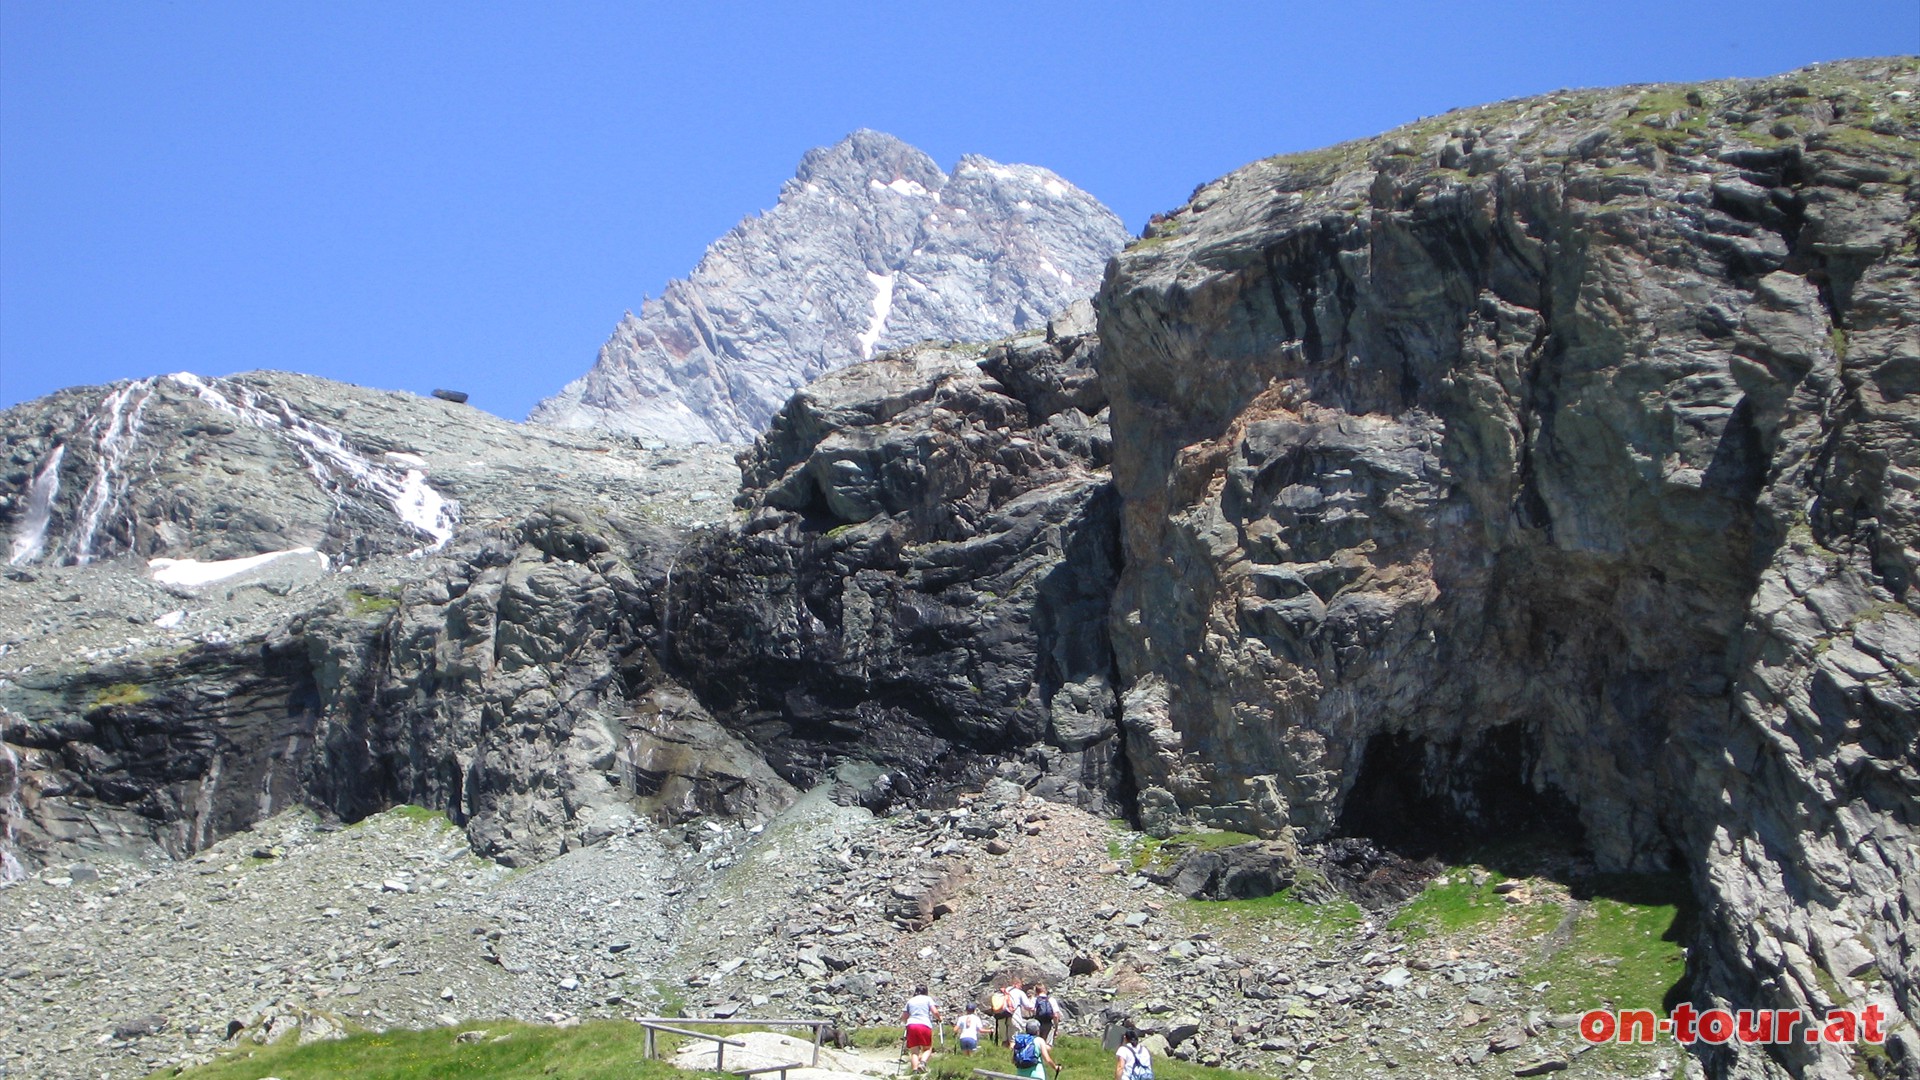 Wasserflle auf mehreren Ebenen. Darber thront der Glockner-Gipfel.